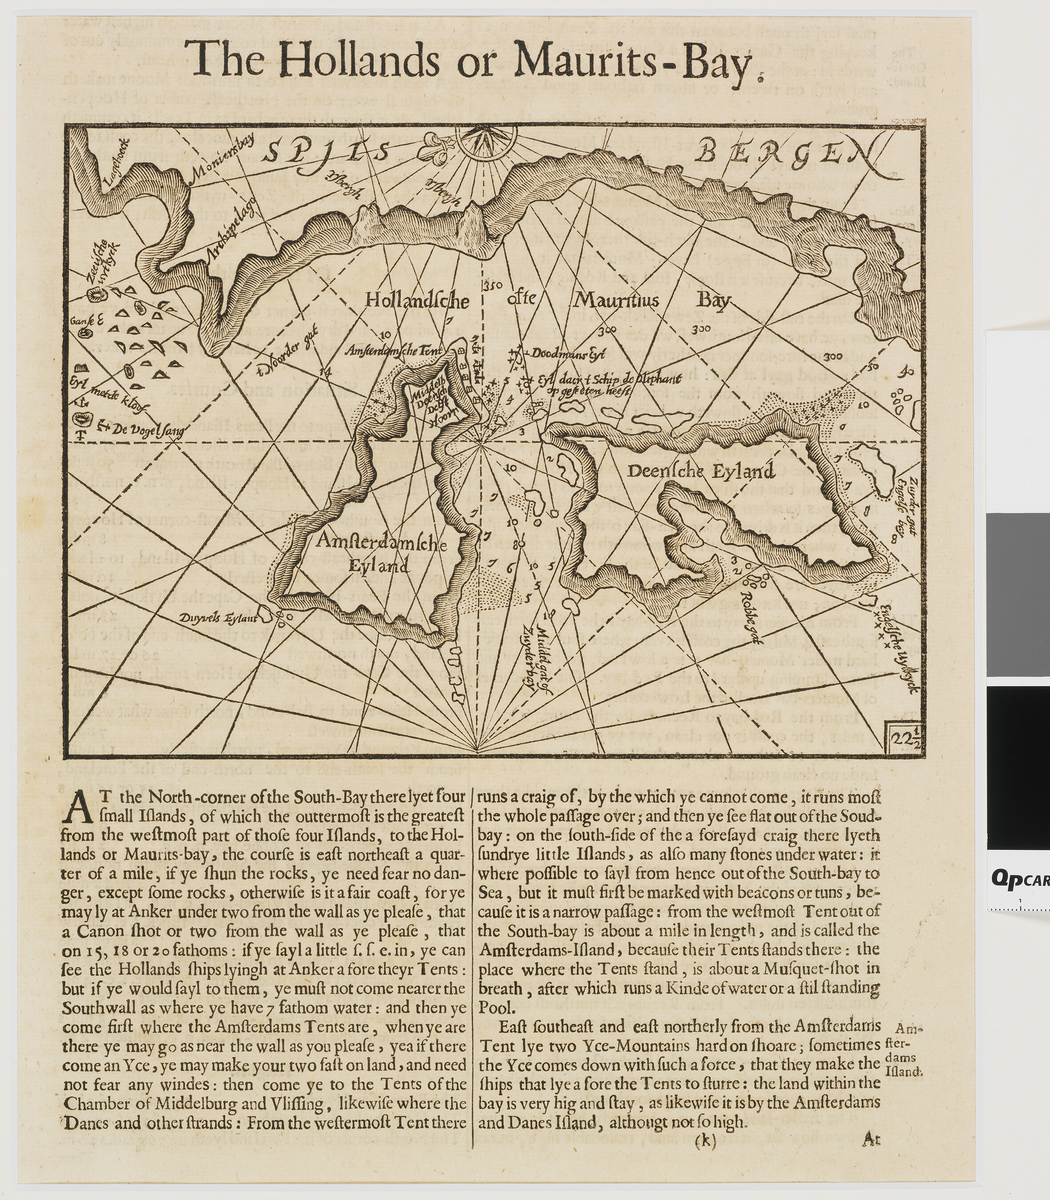 Ark fra en bok, med sorthvitt kart som viser deler av Spitsbergen. Teksten beskriver Spitsbergen og øyene omkring. Selve kartet og teksten er publisert på en bokside og er nesten identisk med SVB 10907.